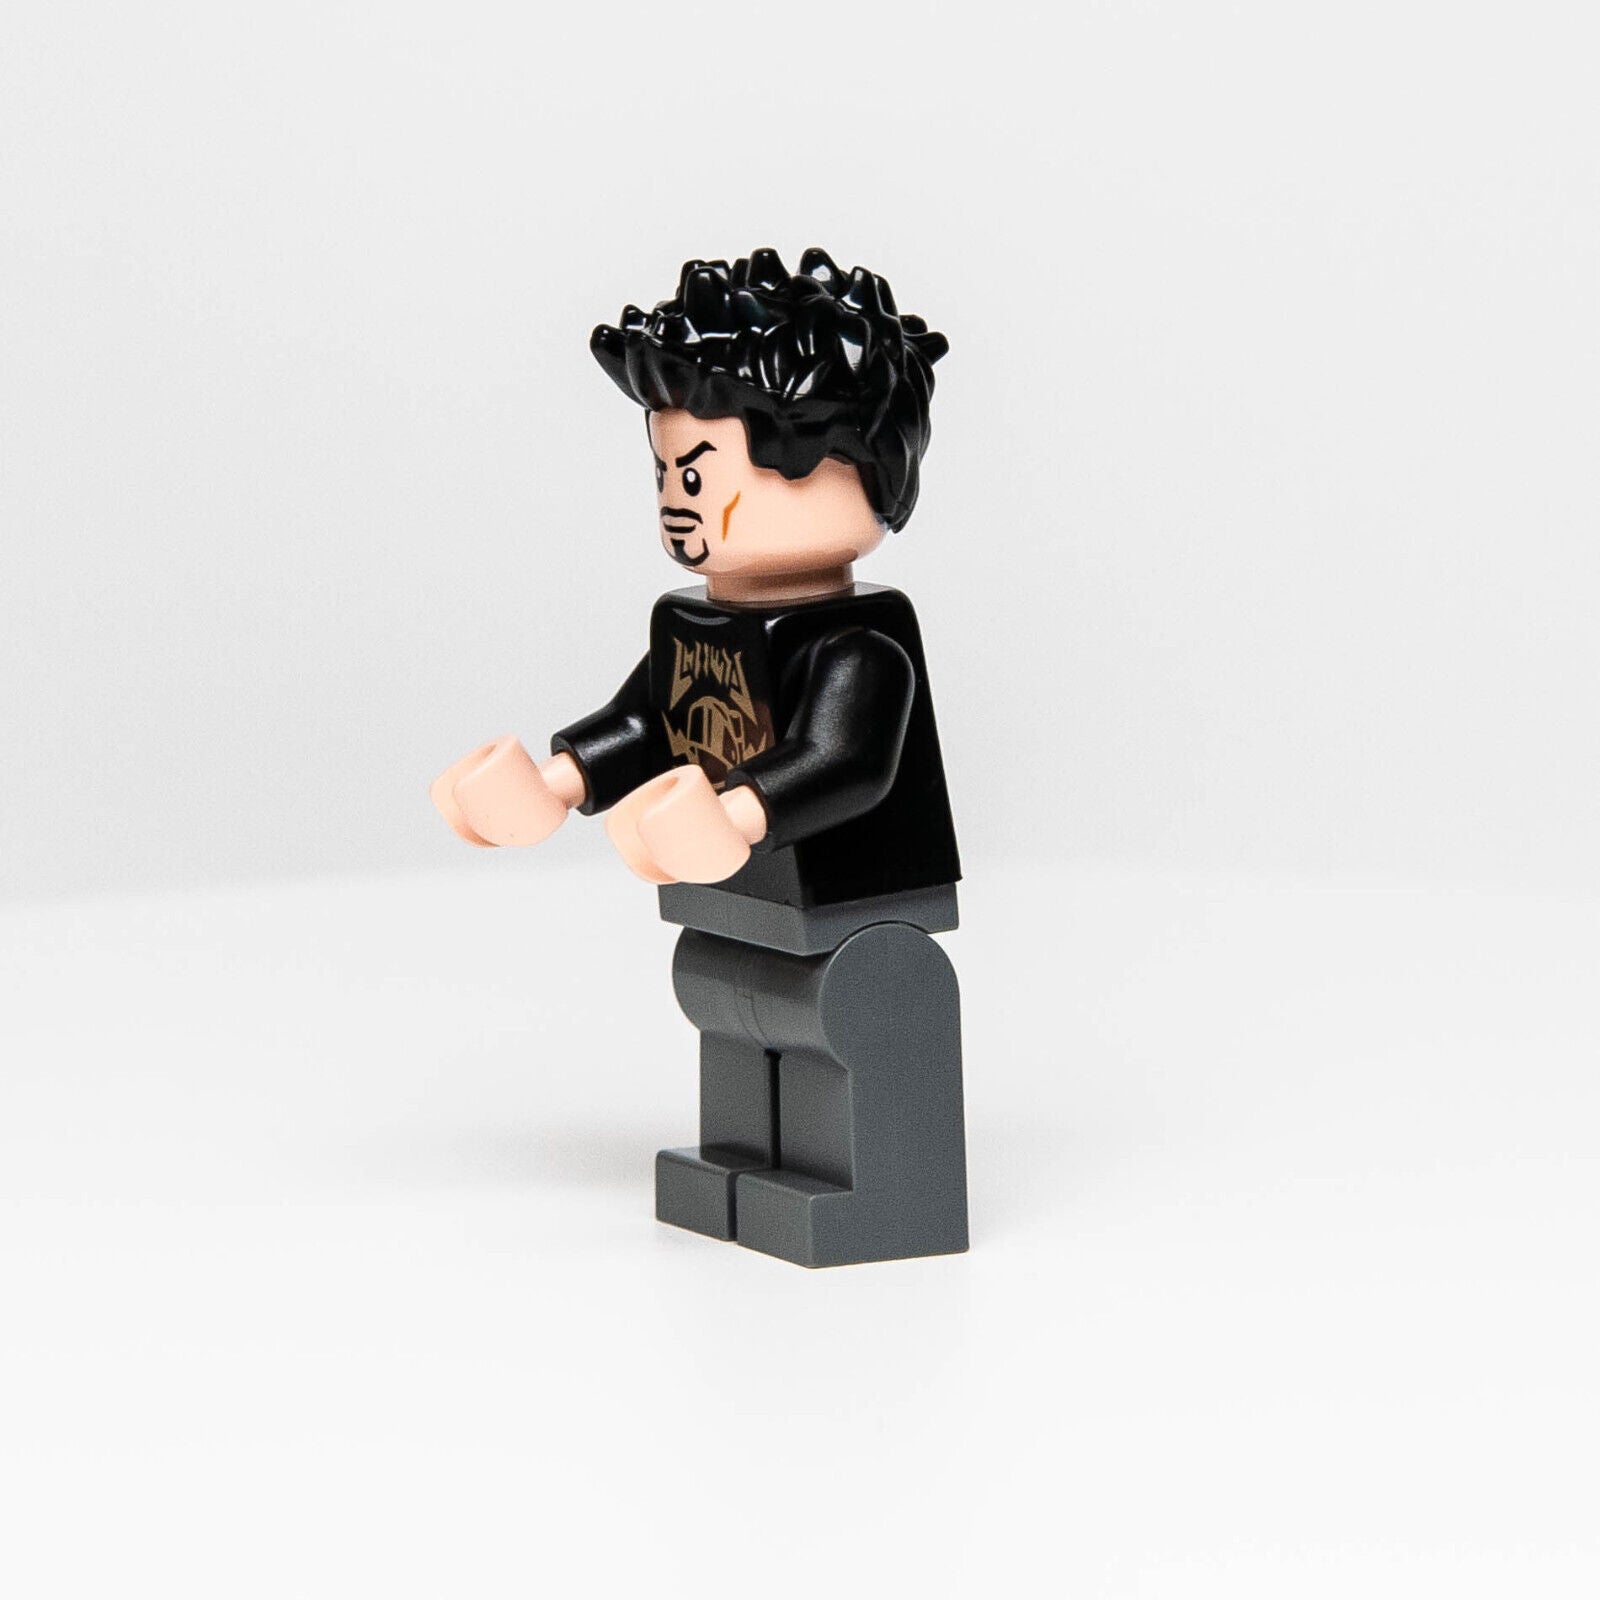 NEW LEGO Tony Stark Minifigure (sh747) 76216 Marvel